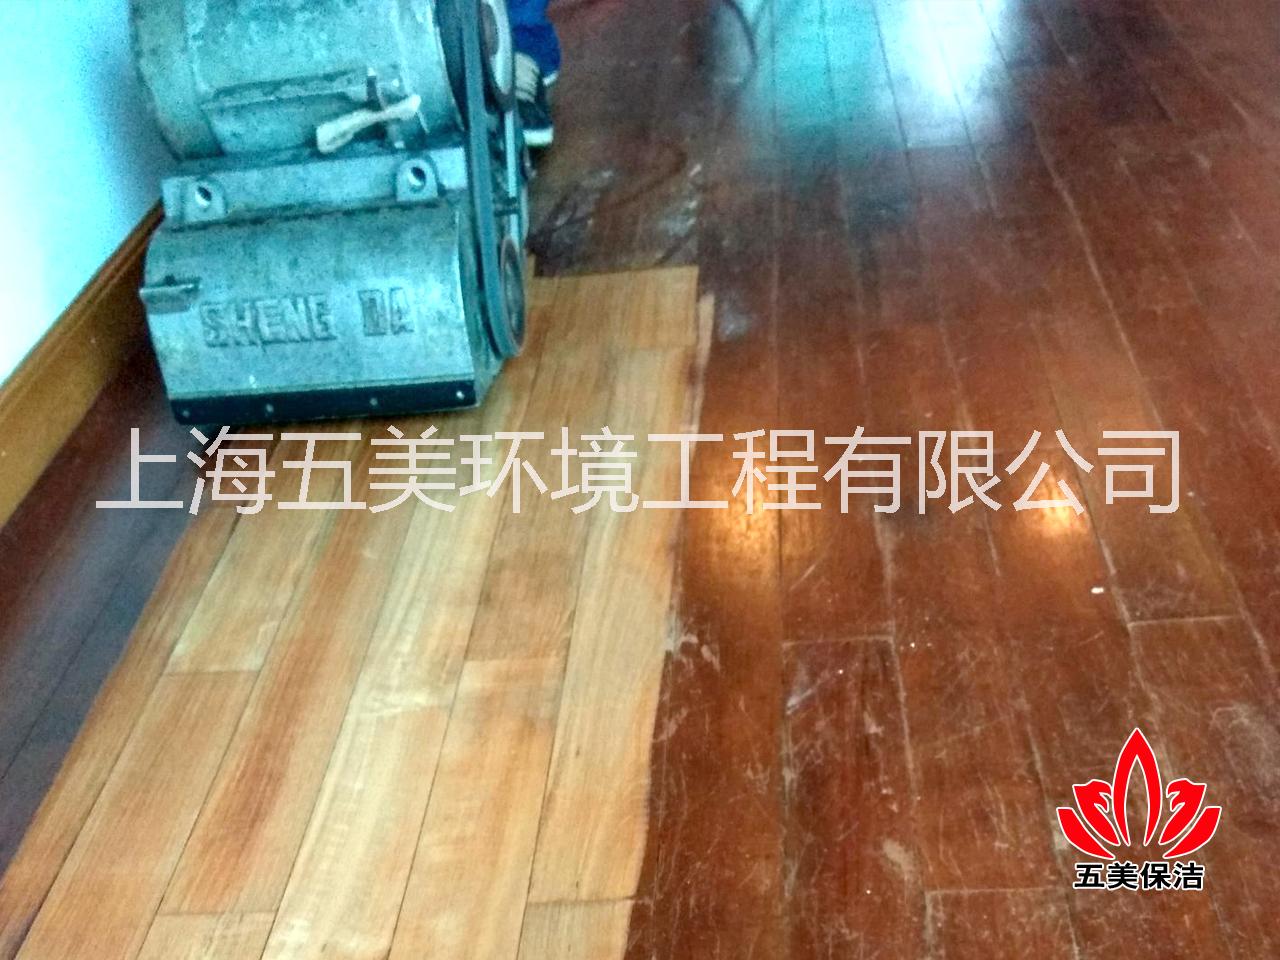 上海地板翻新机,上海地板翻新公司批发